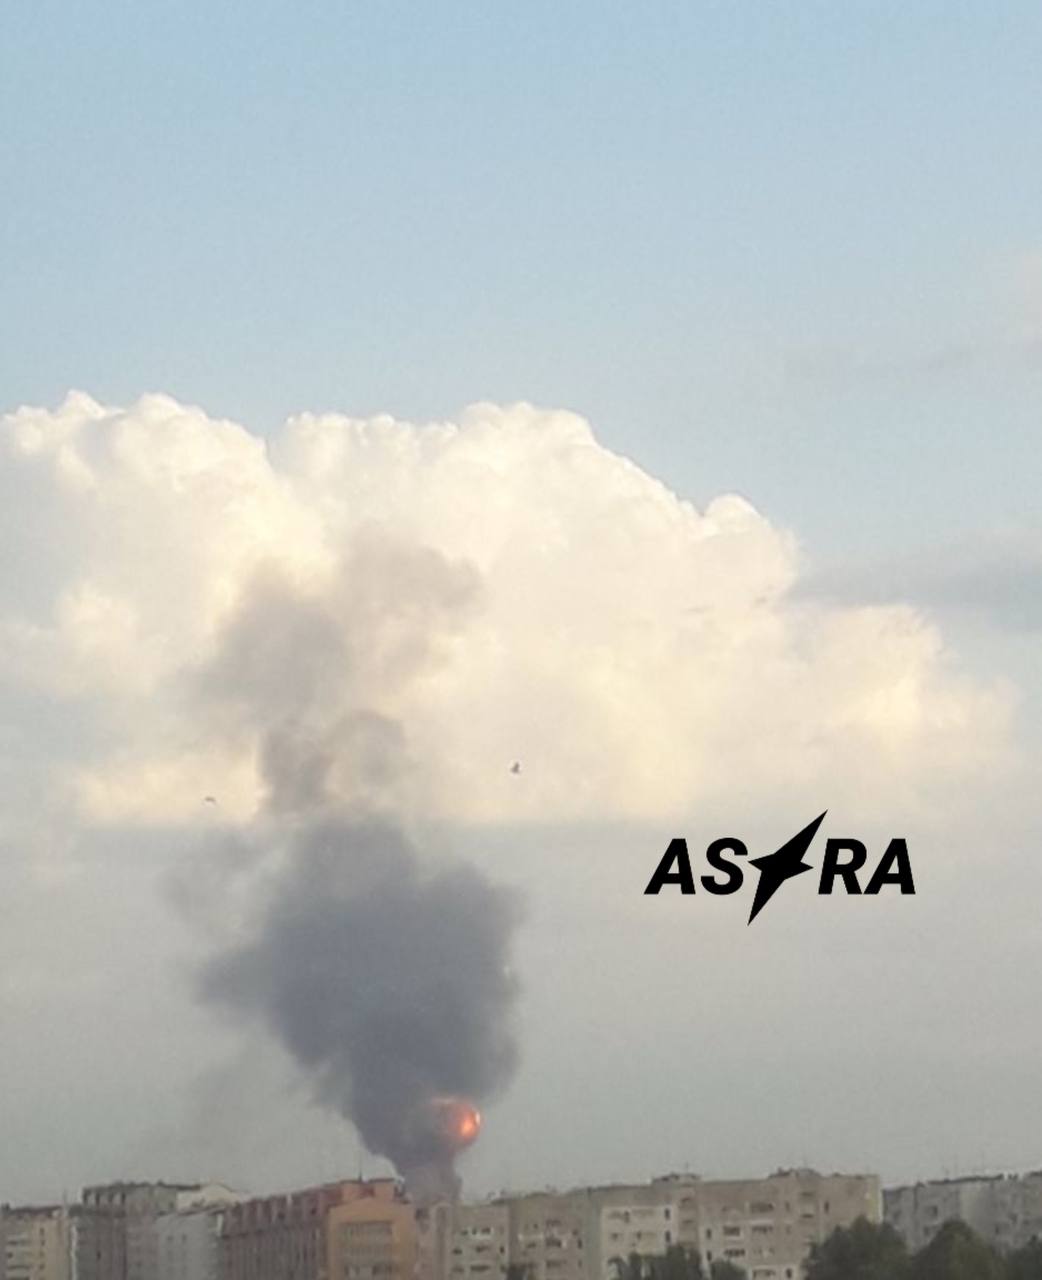 В Севастополе взрывы, сообщили подписчики ASTRA. Поднялся столб дыма, предположительно, где-то со стороны мыса Фиолента и Балаклавы